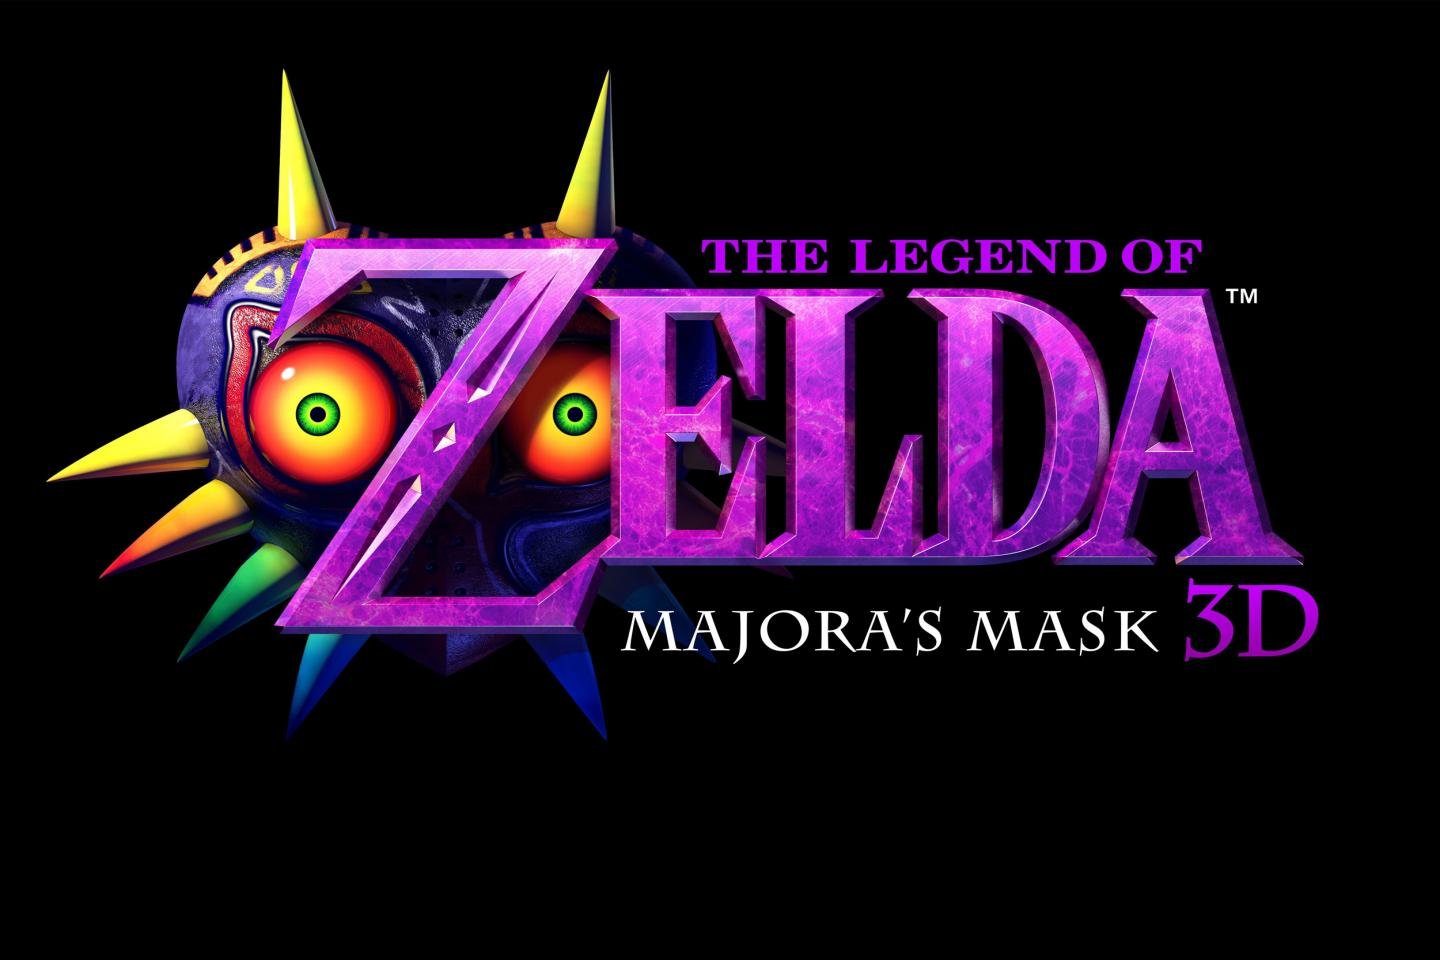 Download hd 1440x960 The Legend Of Zelda: Majora's Mask desktop background ID:145466 for free